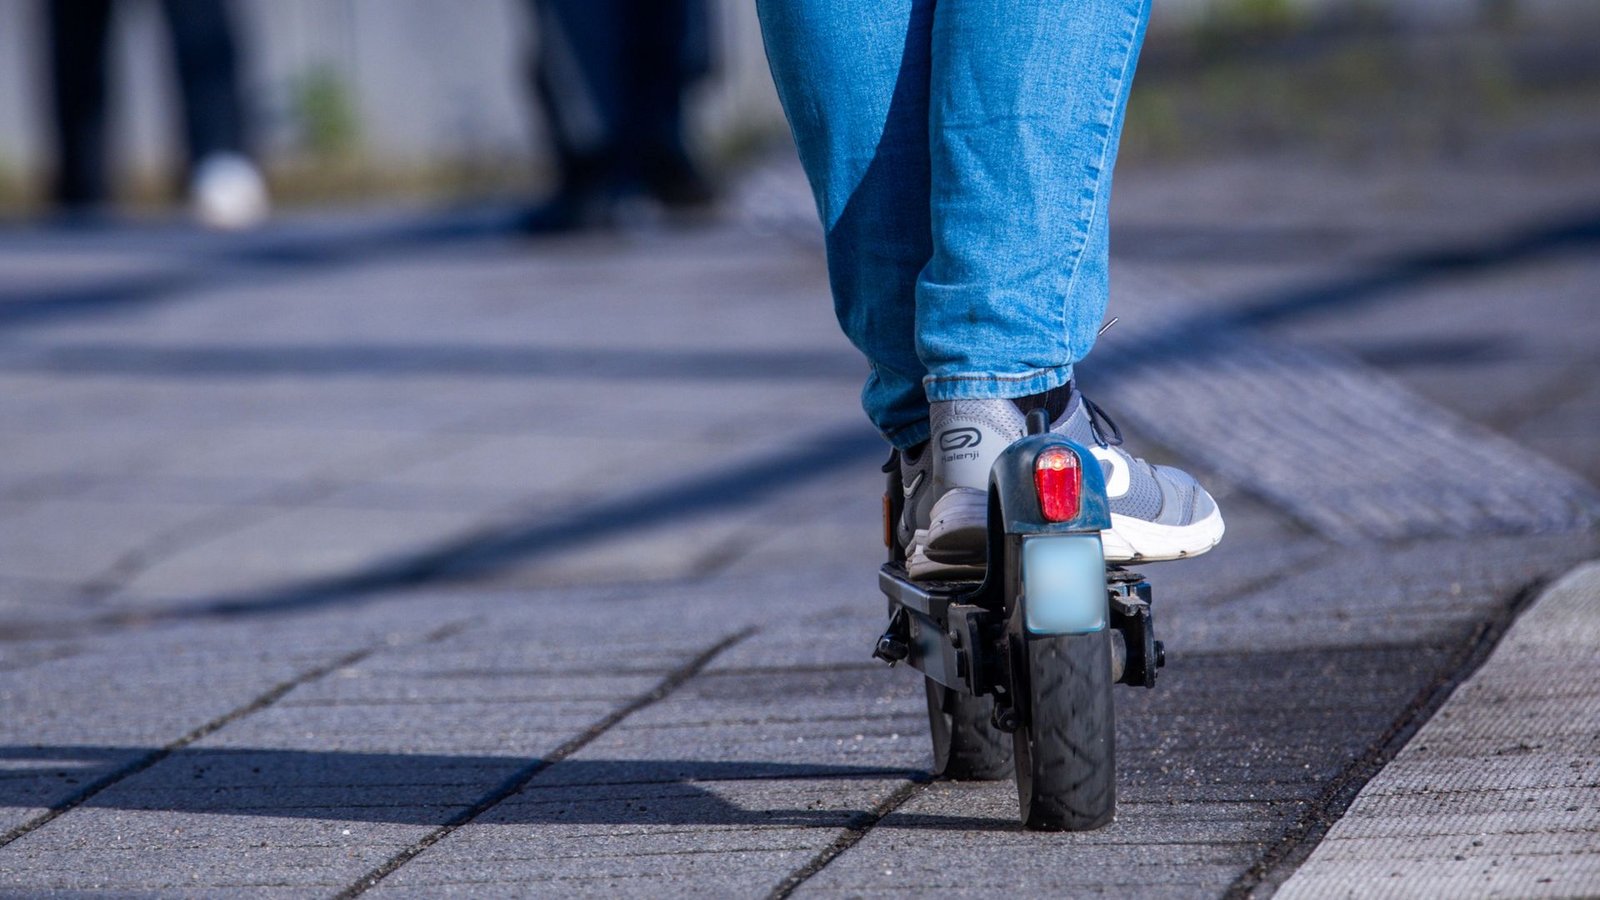 Die Mitnahme von E-Scootern ist wegen Sicherheitsbedenken bereits in mehreren Städten in Bussen und Bahnen verboten worden (Symbolbild).Foto: Jens Büttner/dpa